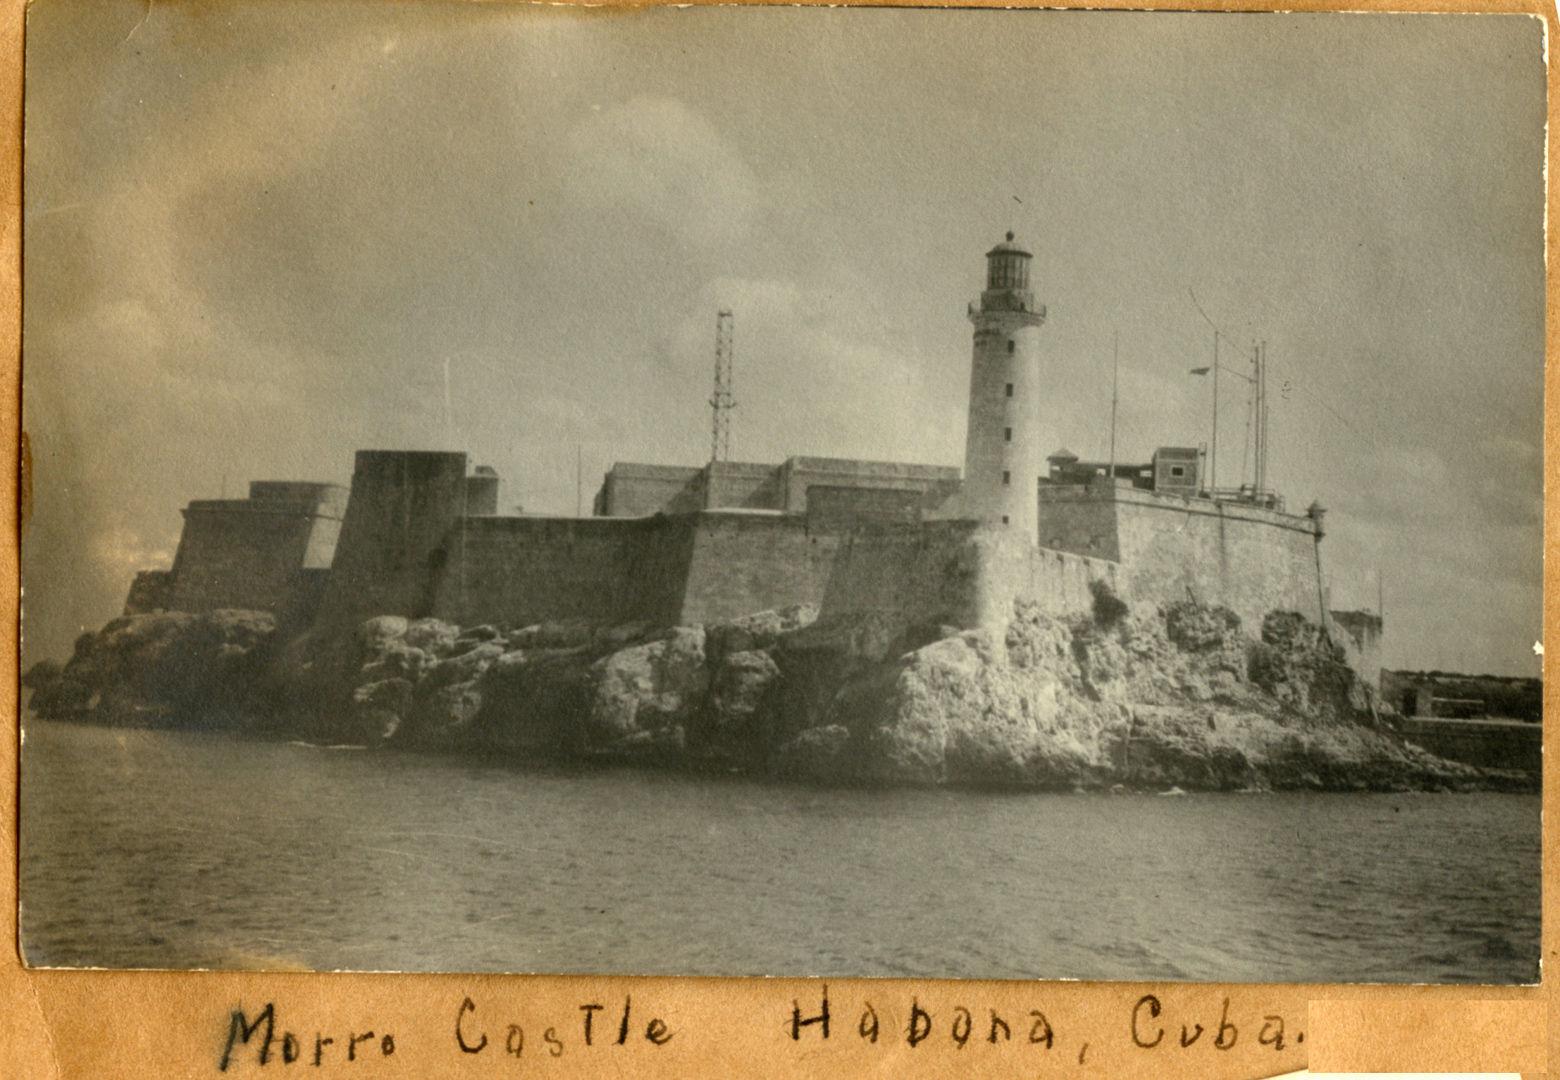 Morro Castle, Habana Cuba